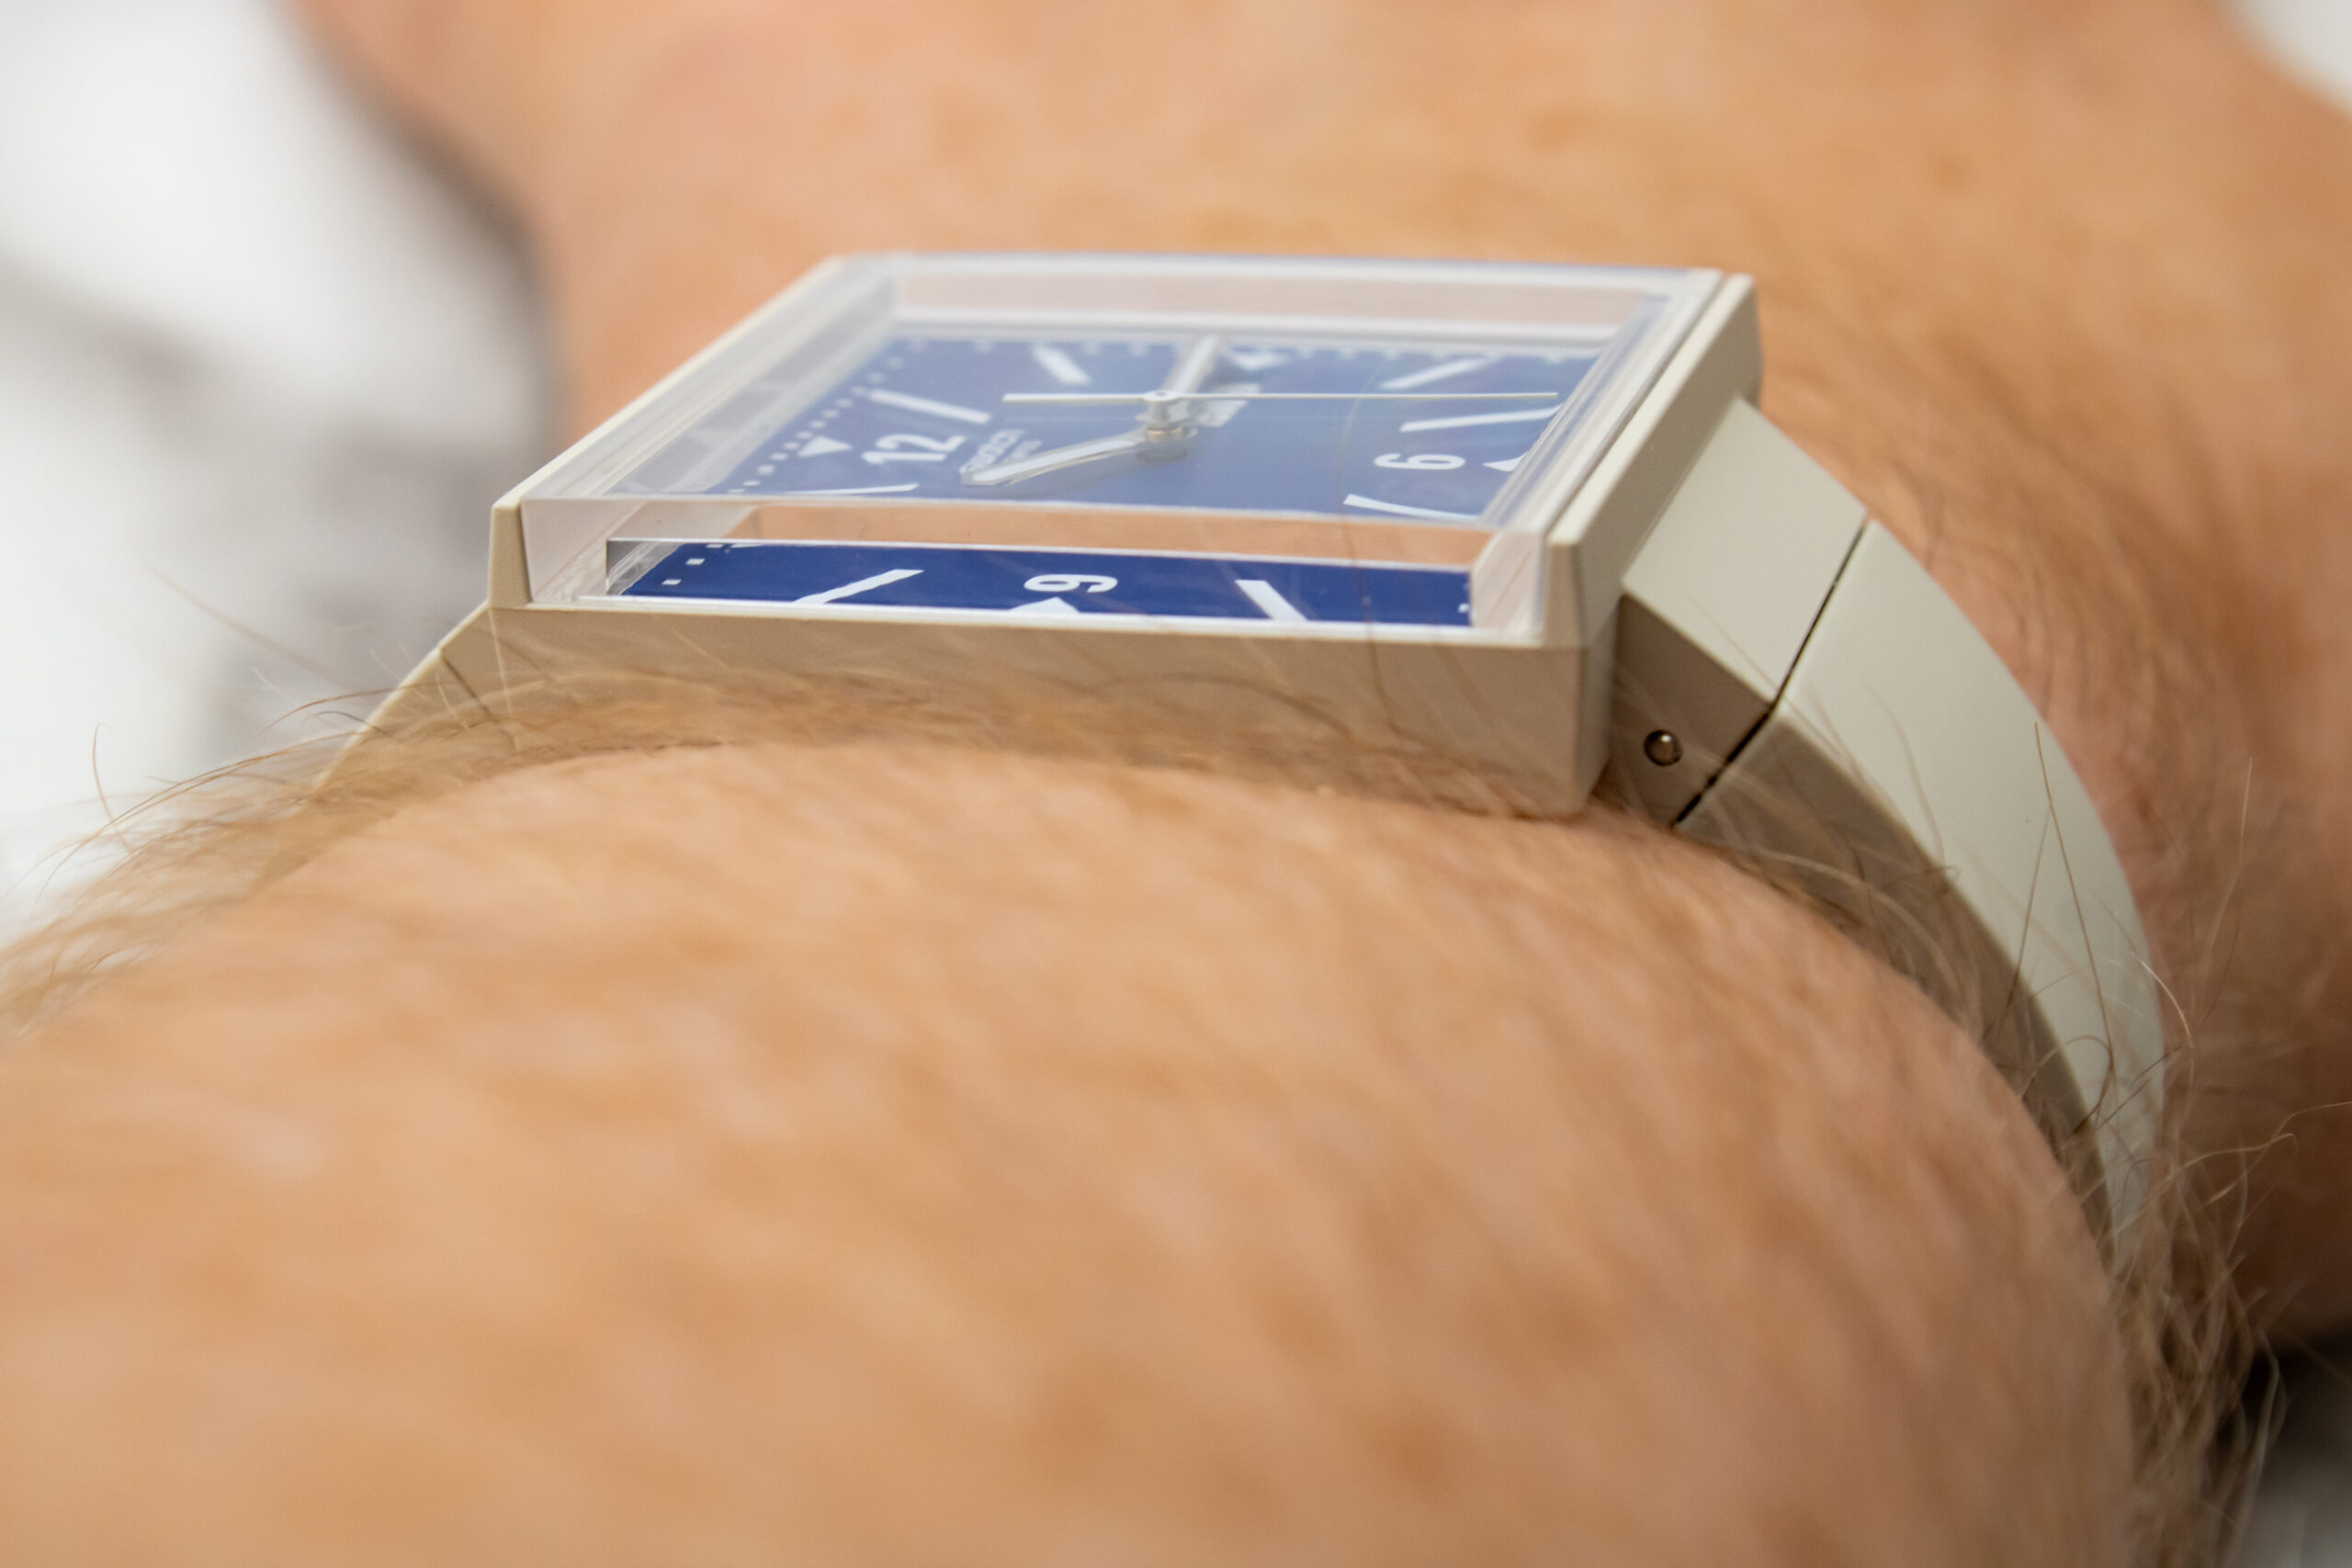 Обзор швейцарских часов до 200$: Swatch What If?